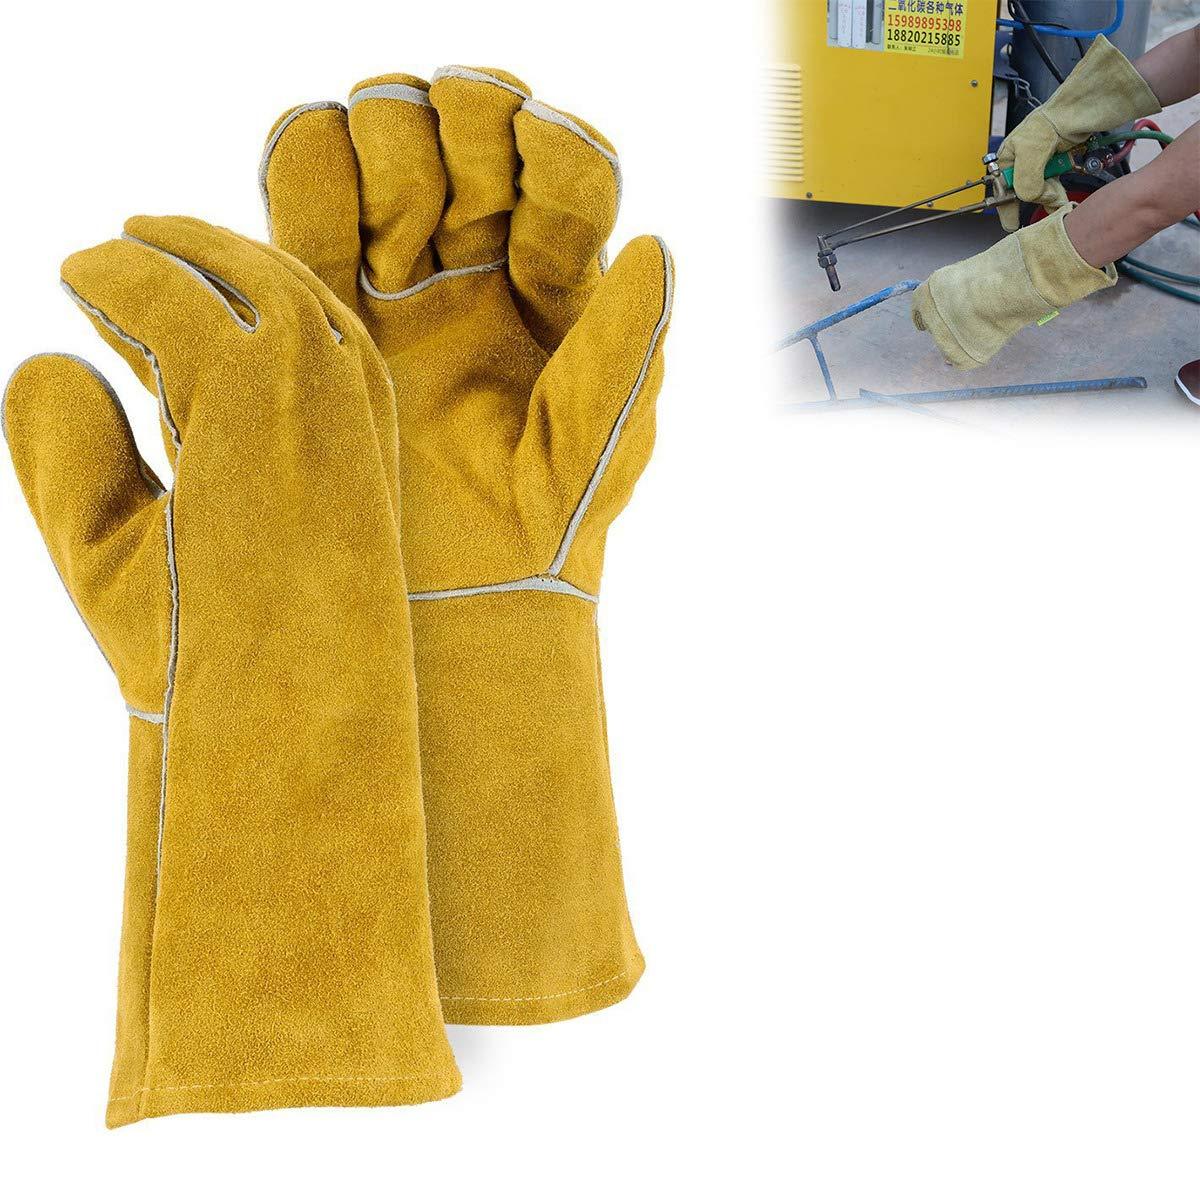 716 Protective Durable Heat Resistant Welding Gloves JK Trends